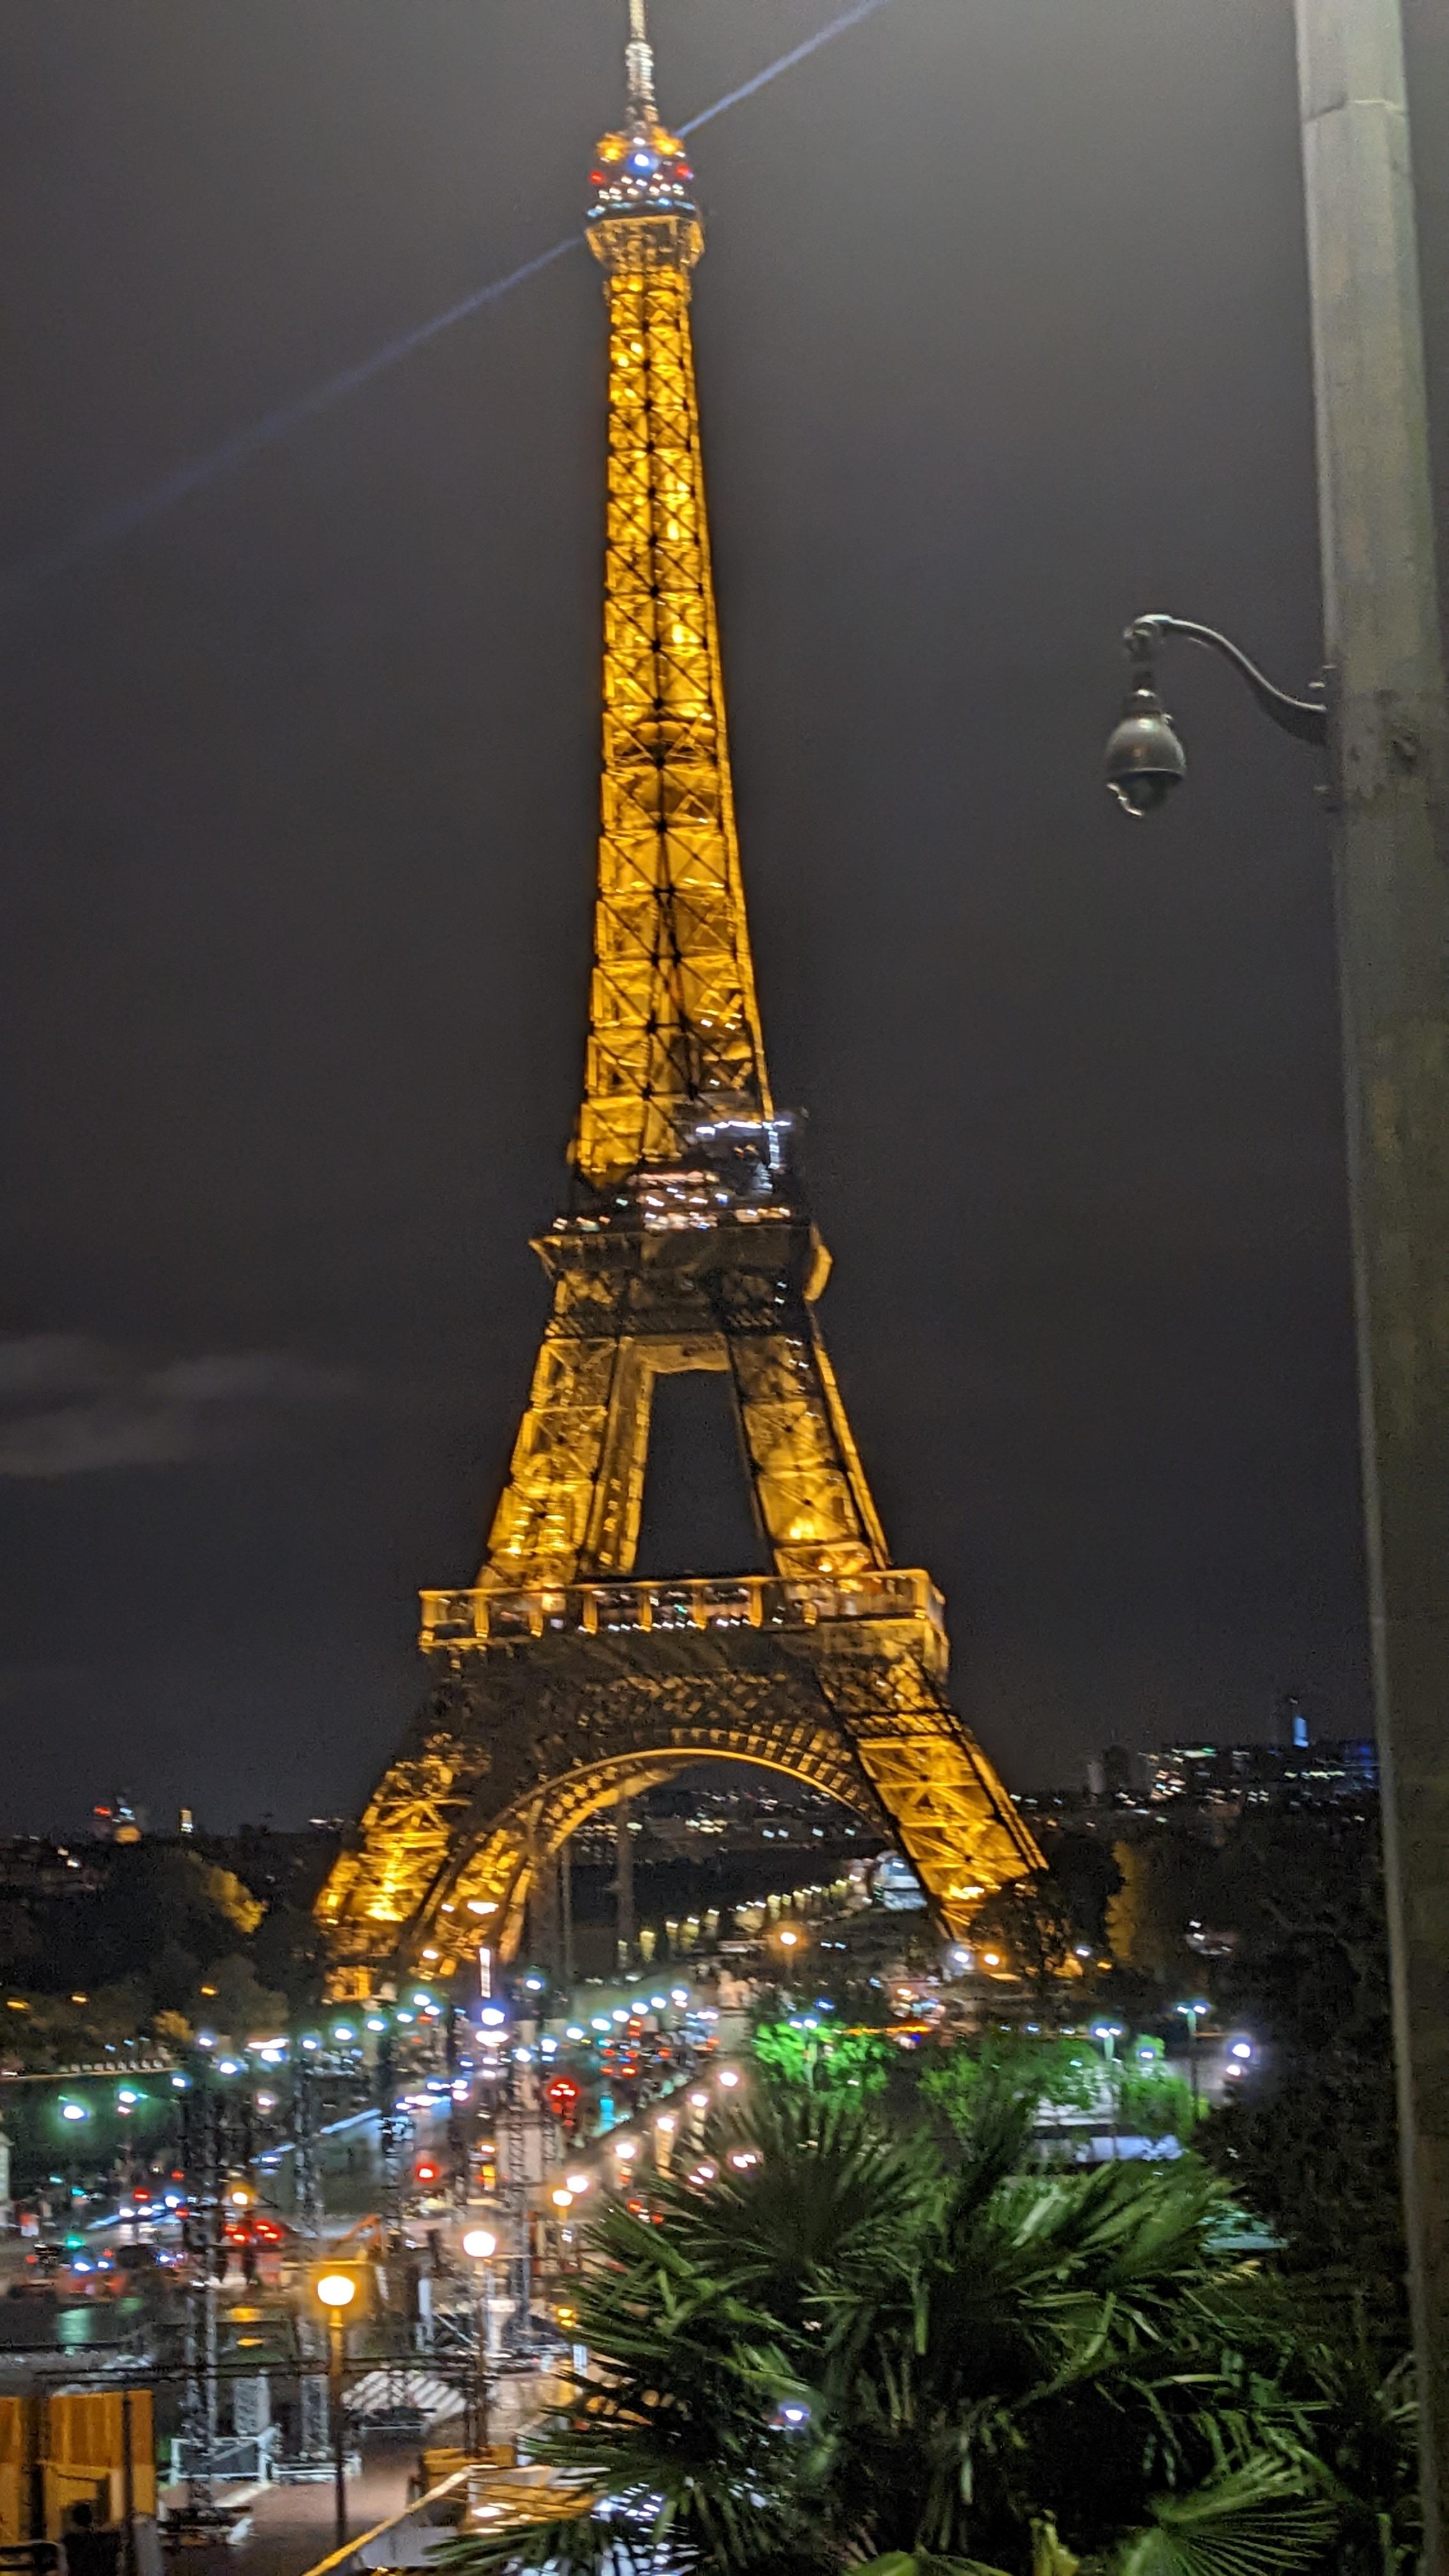 Oooh Paris, du Stadt der Liebe.
Wir fahren mit dem Wohnmobil durch Europa. 🇫🇷
#paris #herbst #urlaub